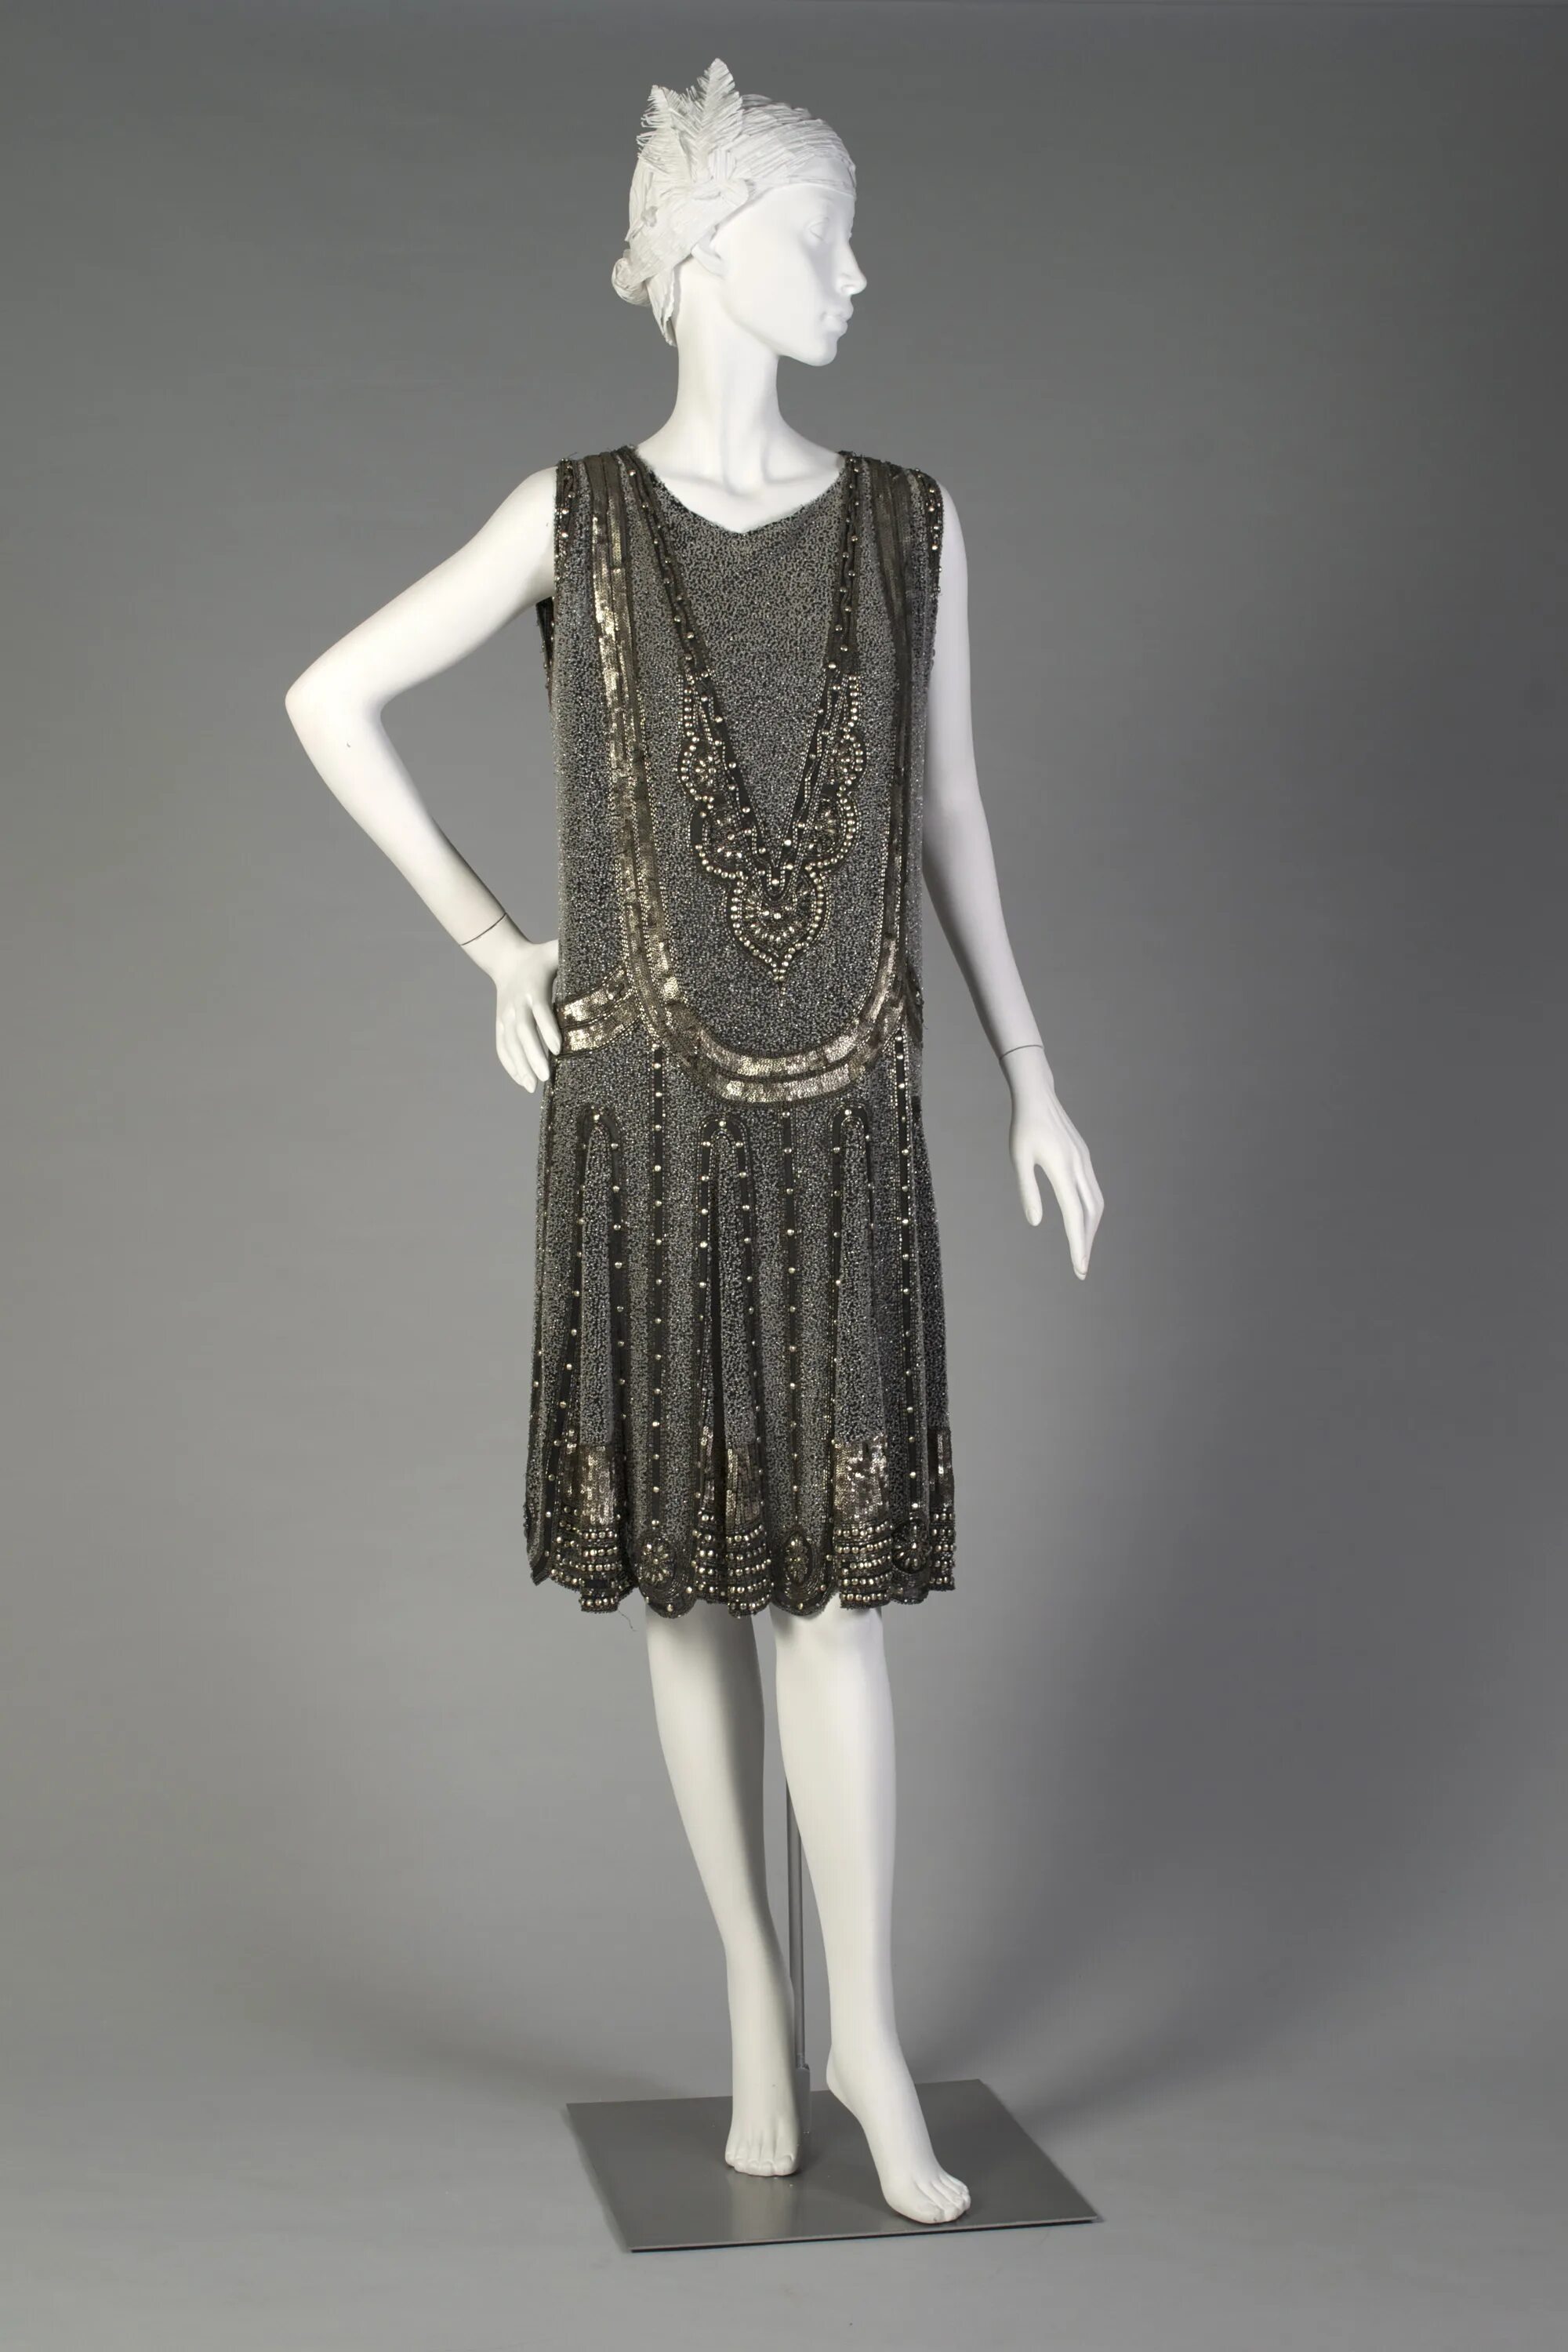 Мода 20х. Мода 20х веков. Платье флаппер 1920. 20е годы 20 века мода. Мода 20-х годов 20 века женщины.